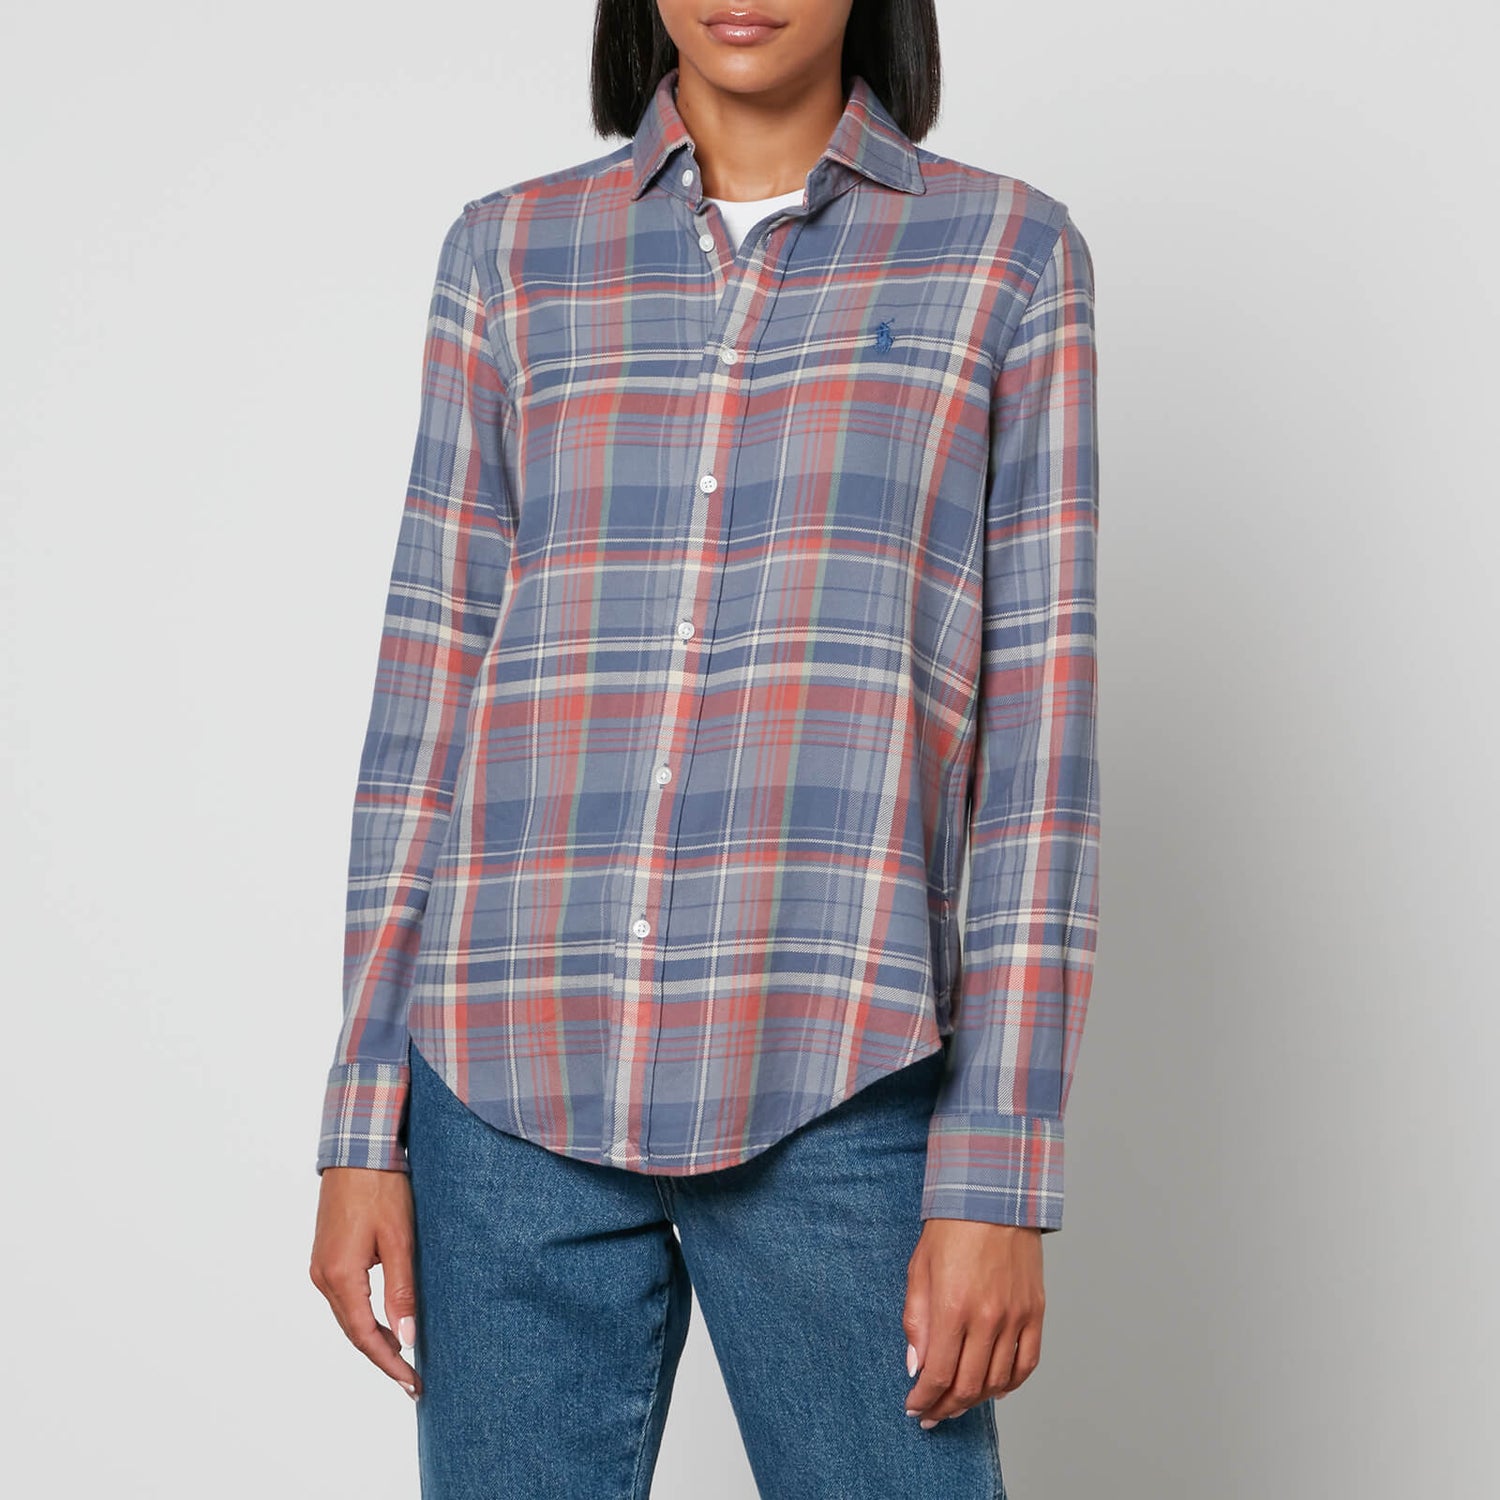 Polo Ralph Lauren Georgia Plaid Flannel Shirt